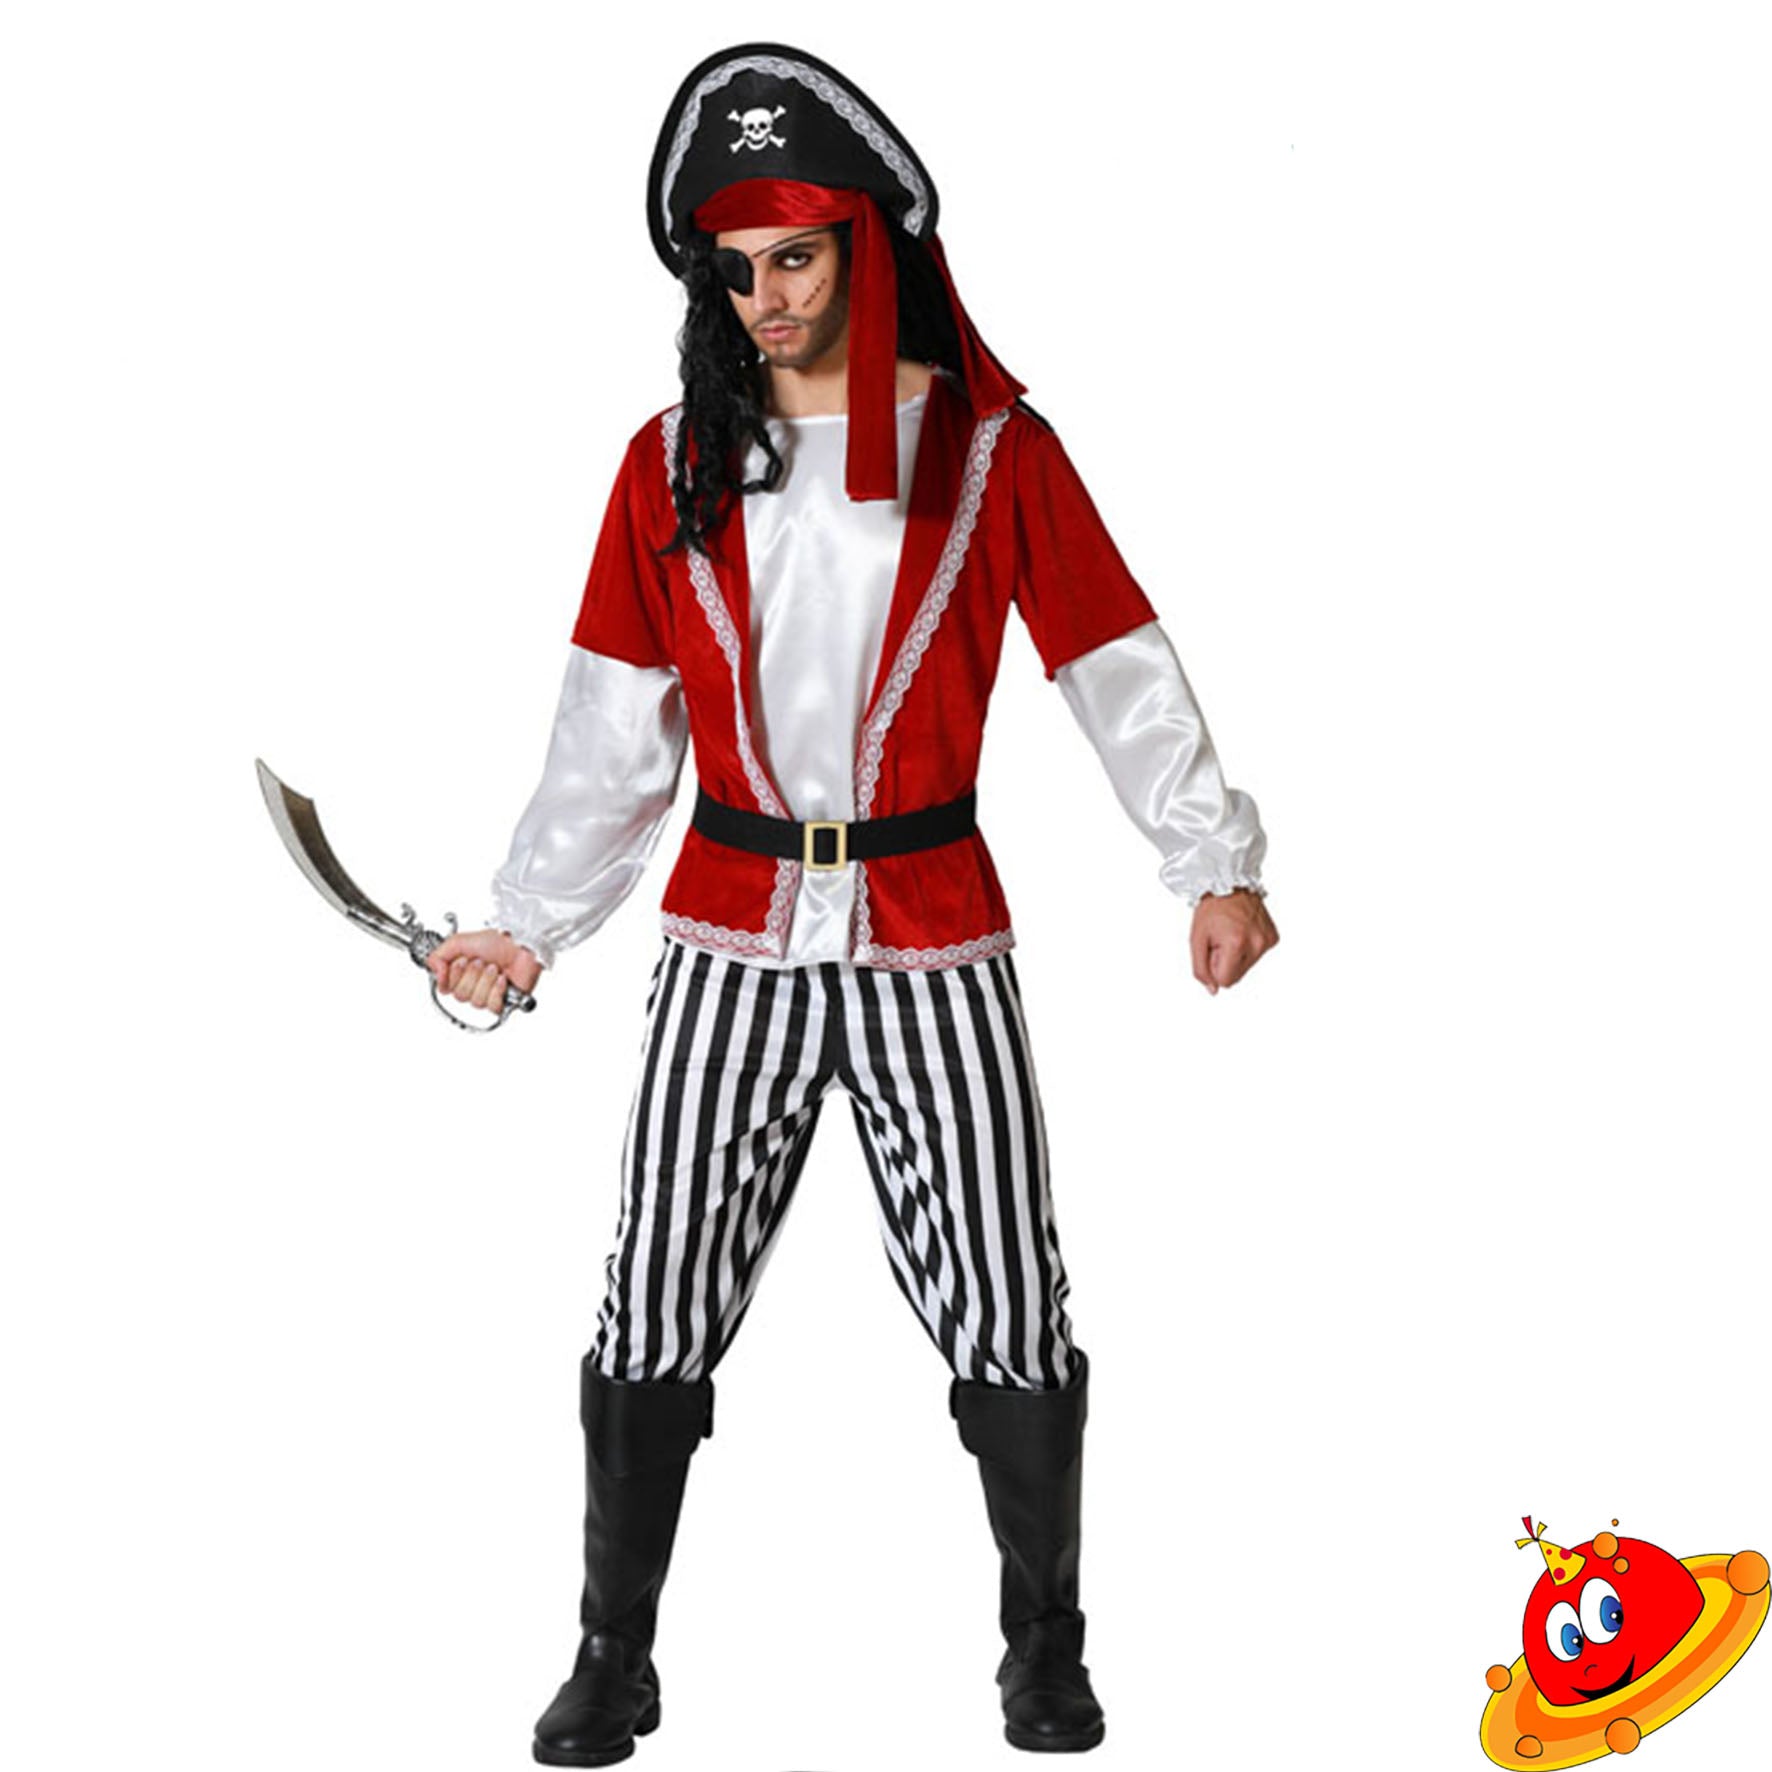 Costume Uomo Bucaniere Pirata Classic Tg 48/54 – Universo In Festa